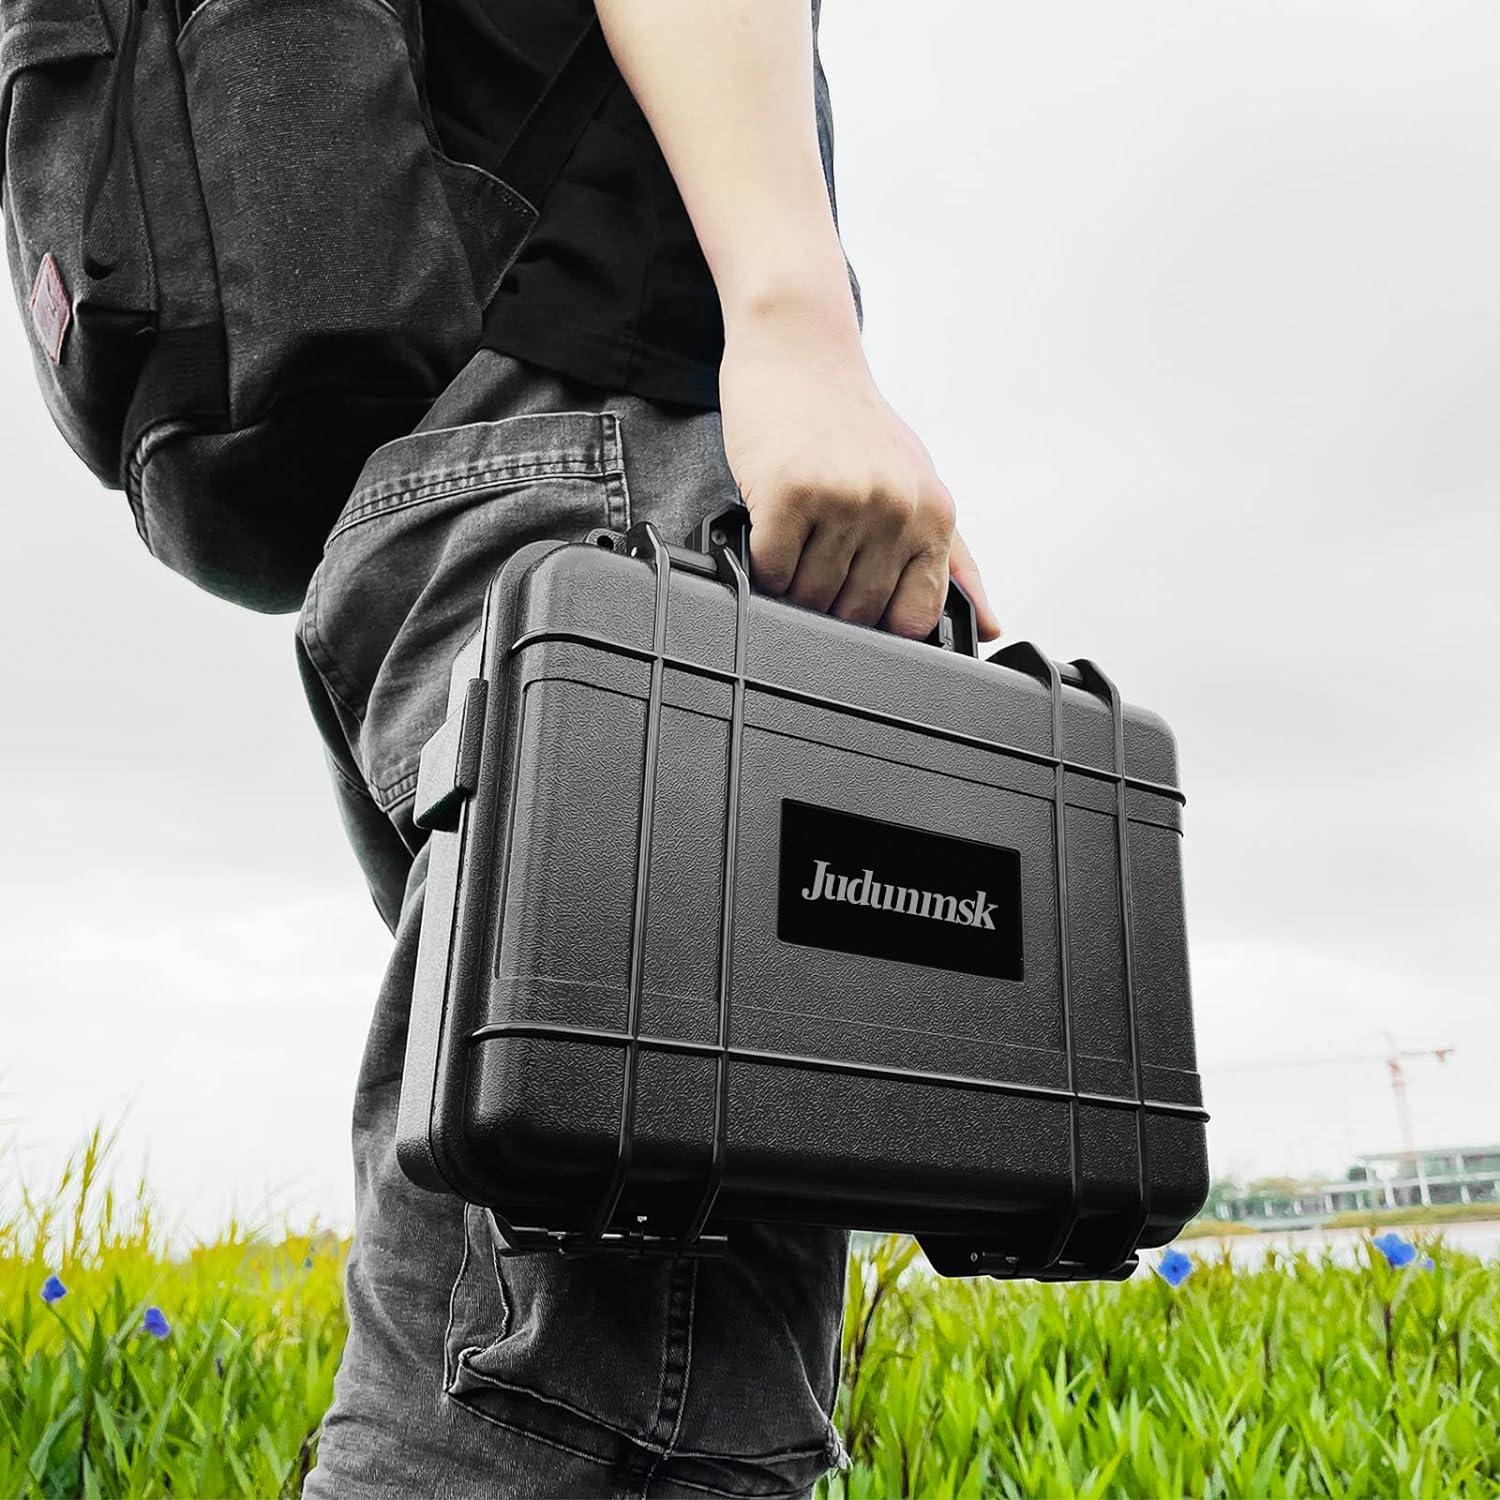 DJI Mavic Mini 2 SE Carrying Case, Portable Travel Bag for DJI Mini 2/Mini  2 SE Fly More Combo Drone Accessories